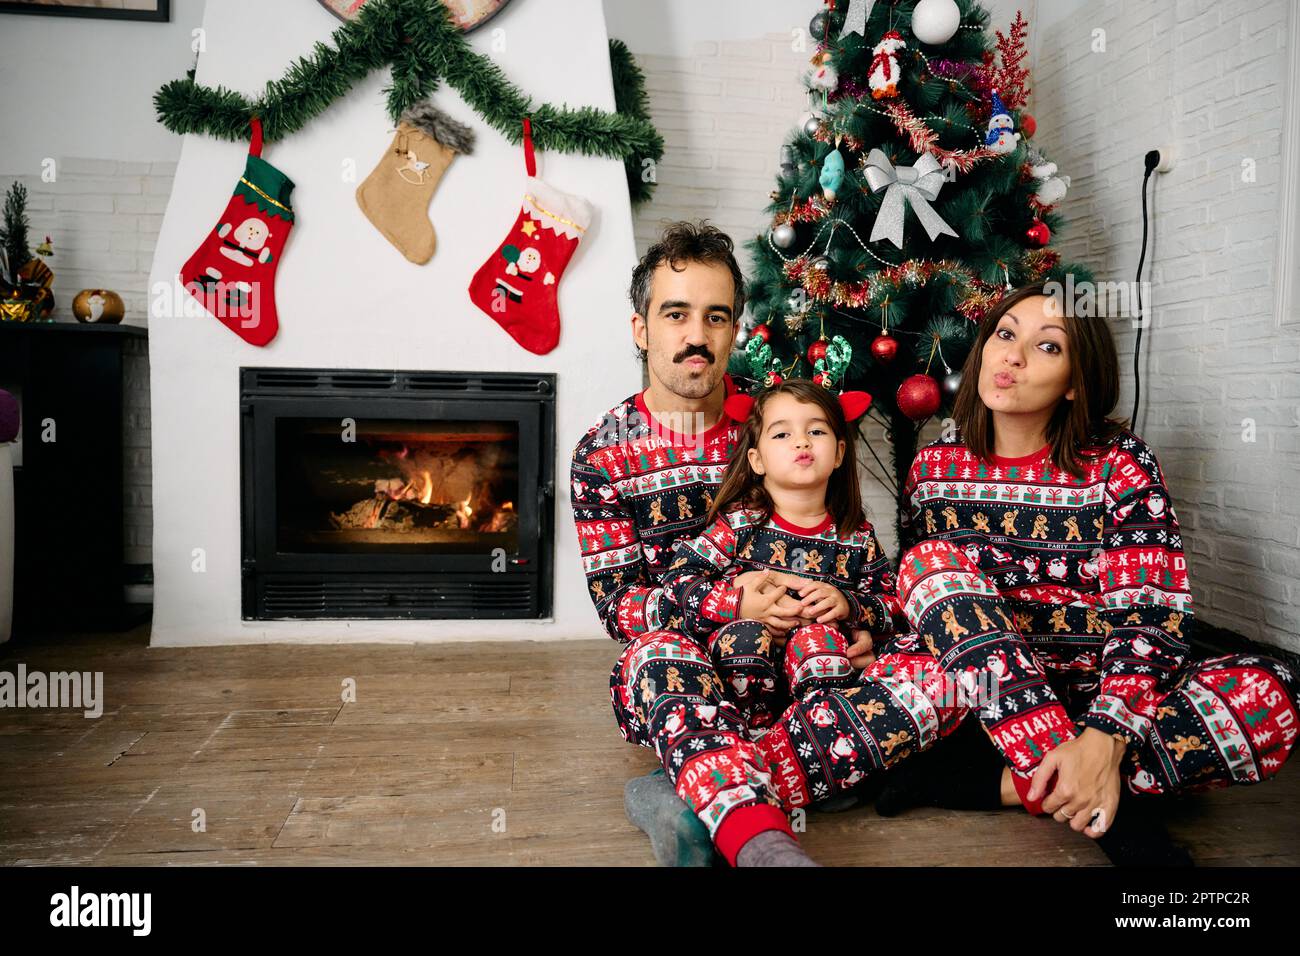 Une famille, avec son père, sa mère et sa fille, portant un pyjama de Noël assorti, prenant des photos de famille devant la cheminée et un tr de Noël Banque D'Images